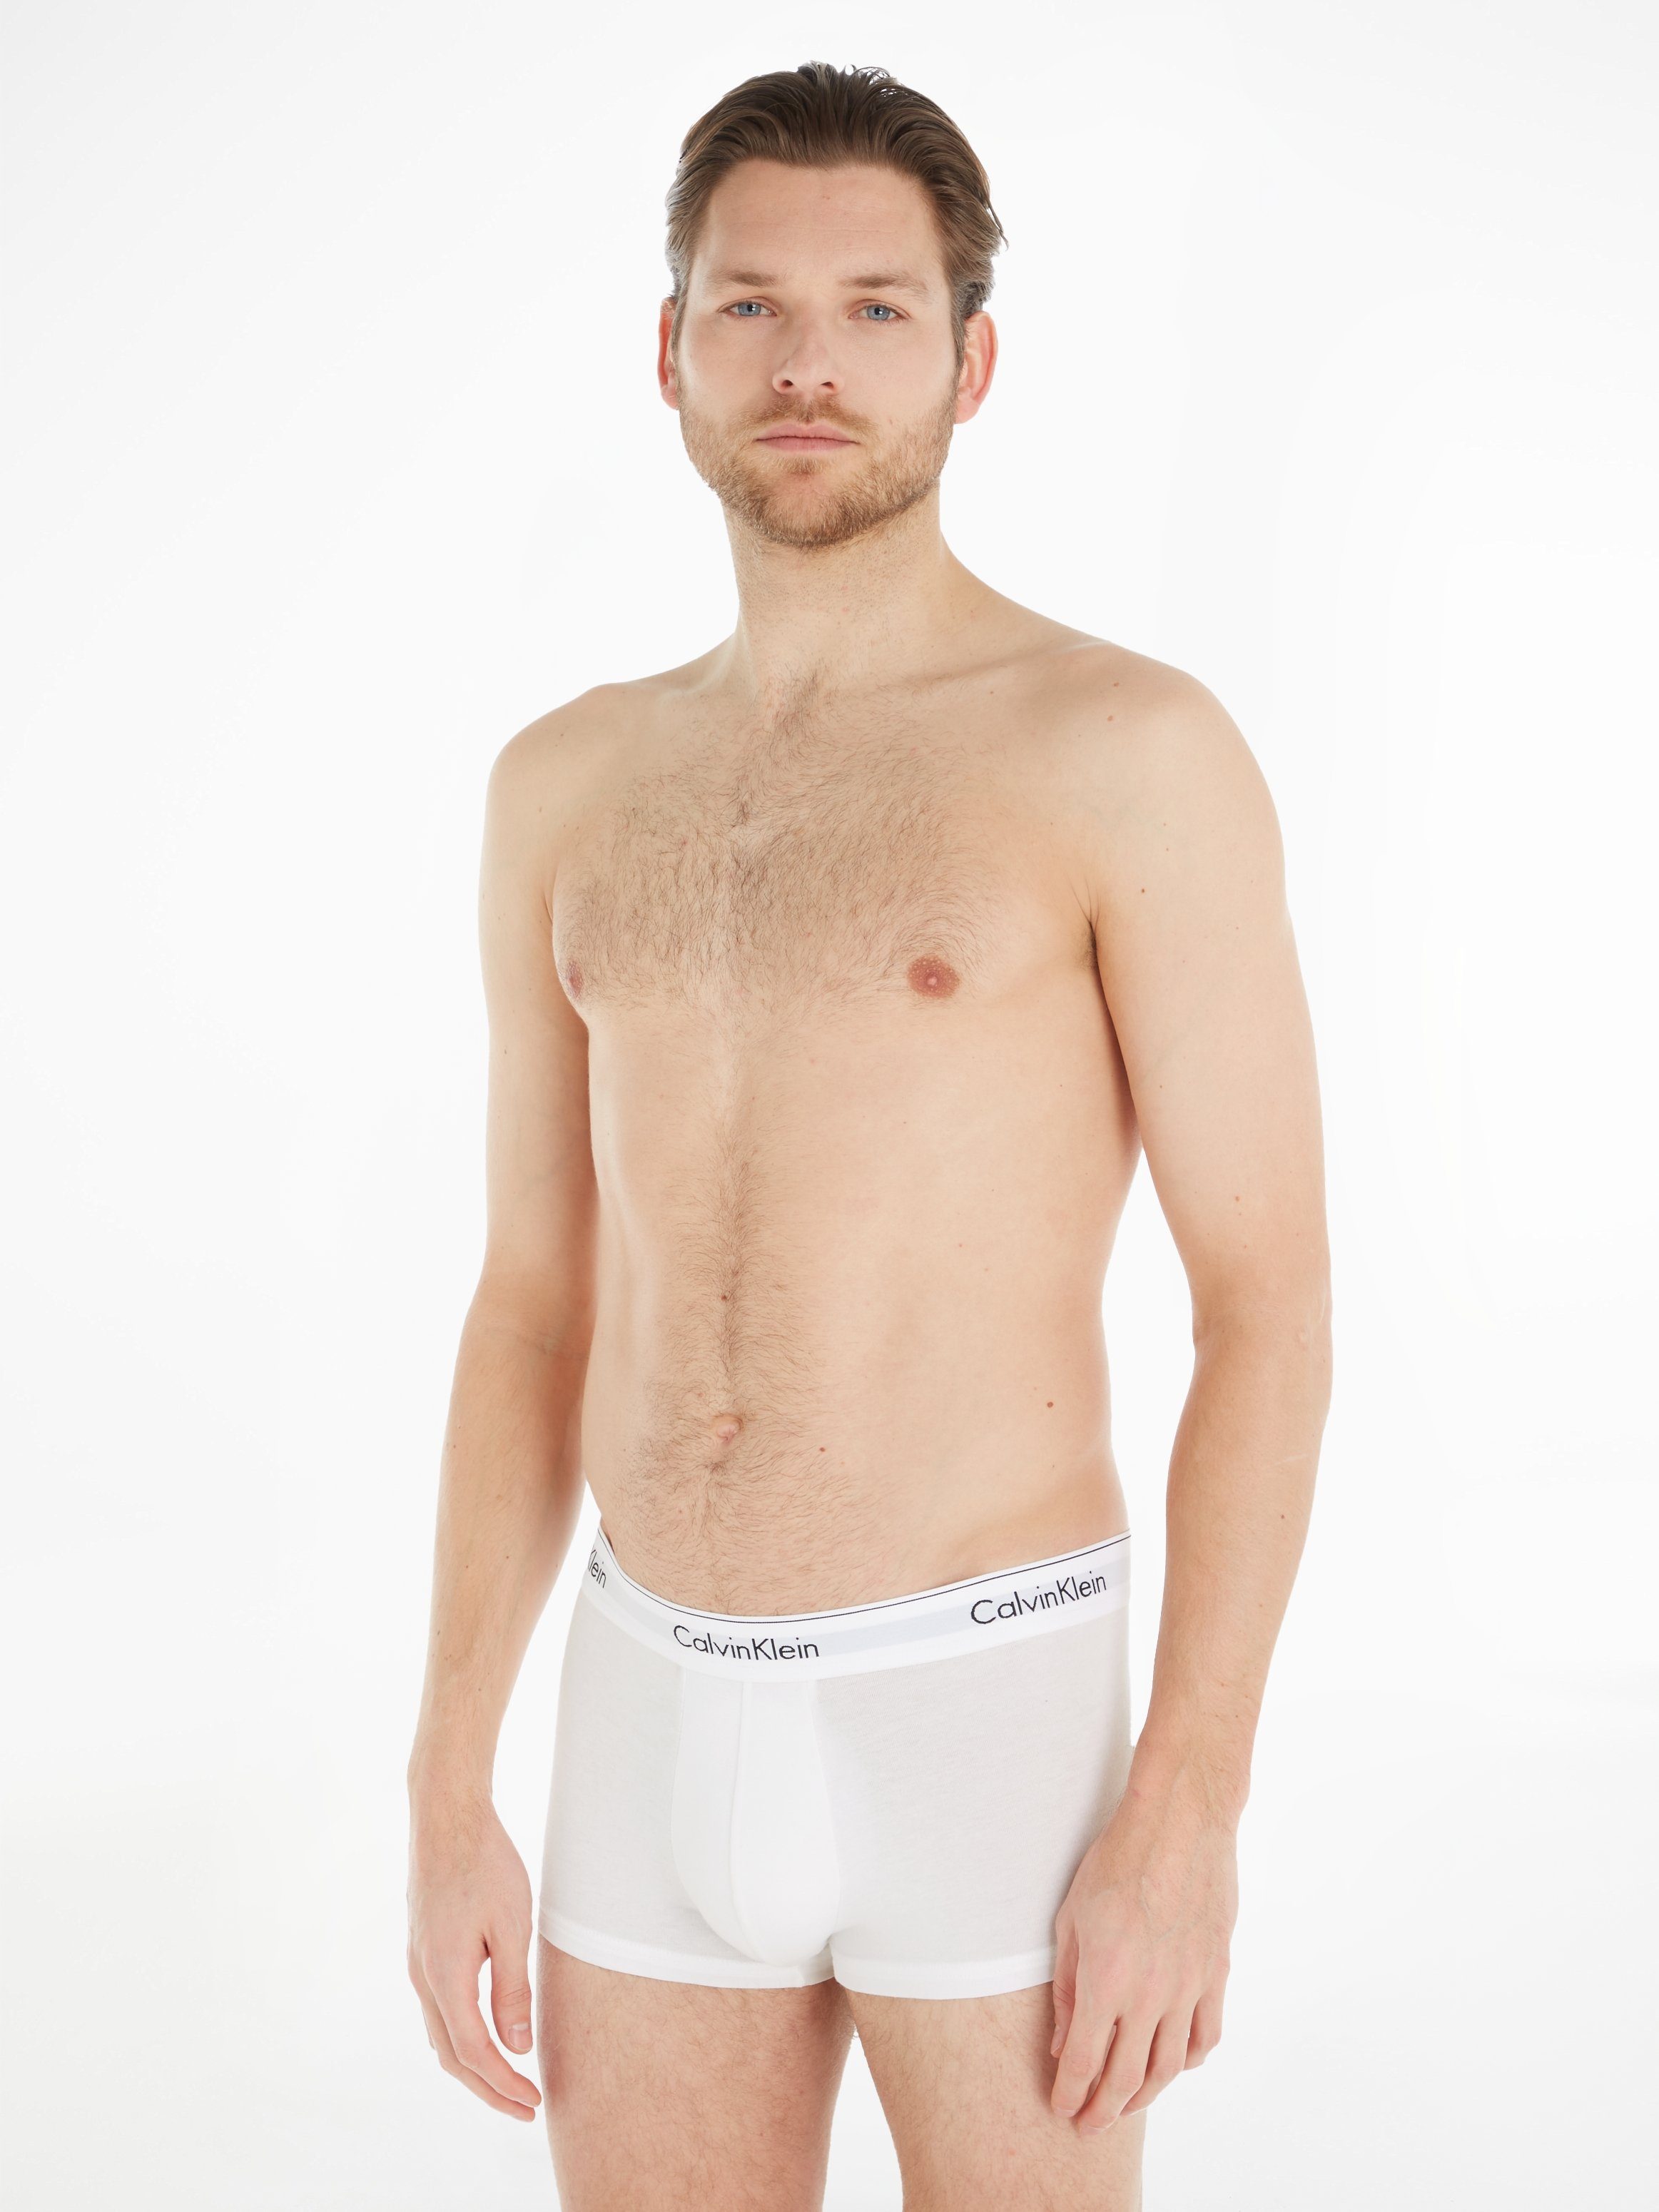 3-St., Logoschriftzug Klein Calvin 3er-Pack) am Underwear hellgrau-meliert, Wäschebund weiß, mit (Packung, Boxer schwarz